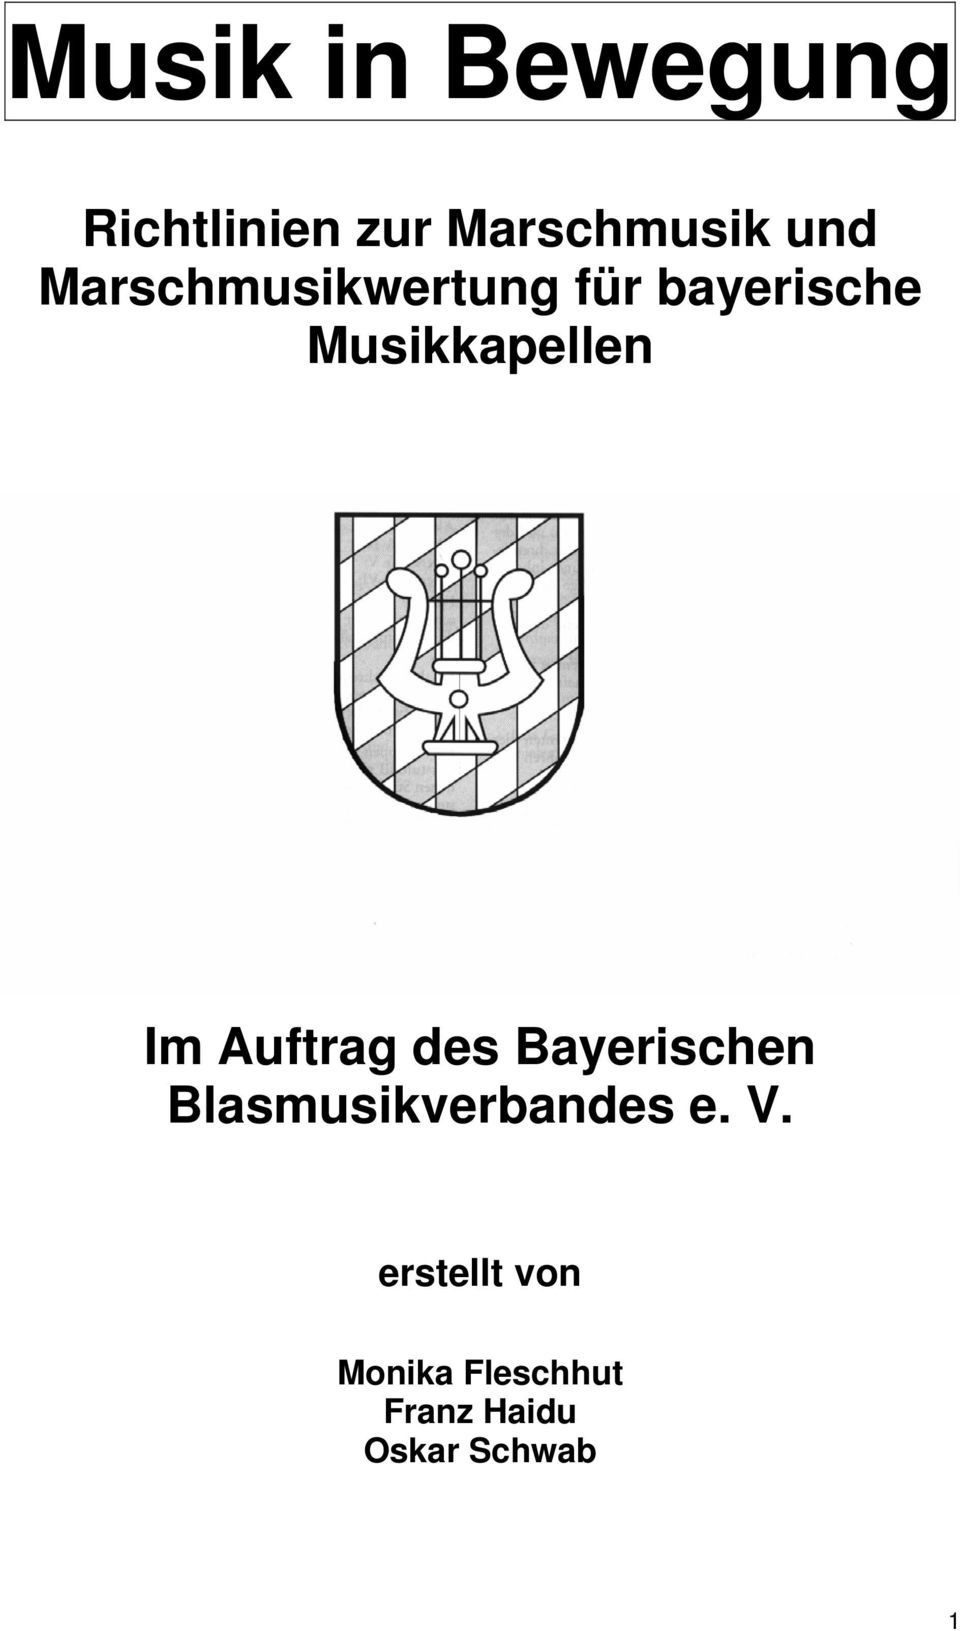 Auftrag des Bayerischen Blasmusikverbandes e. V.